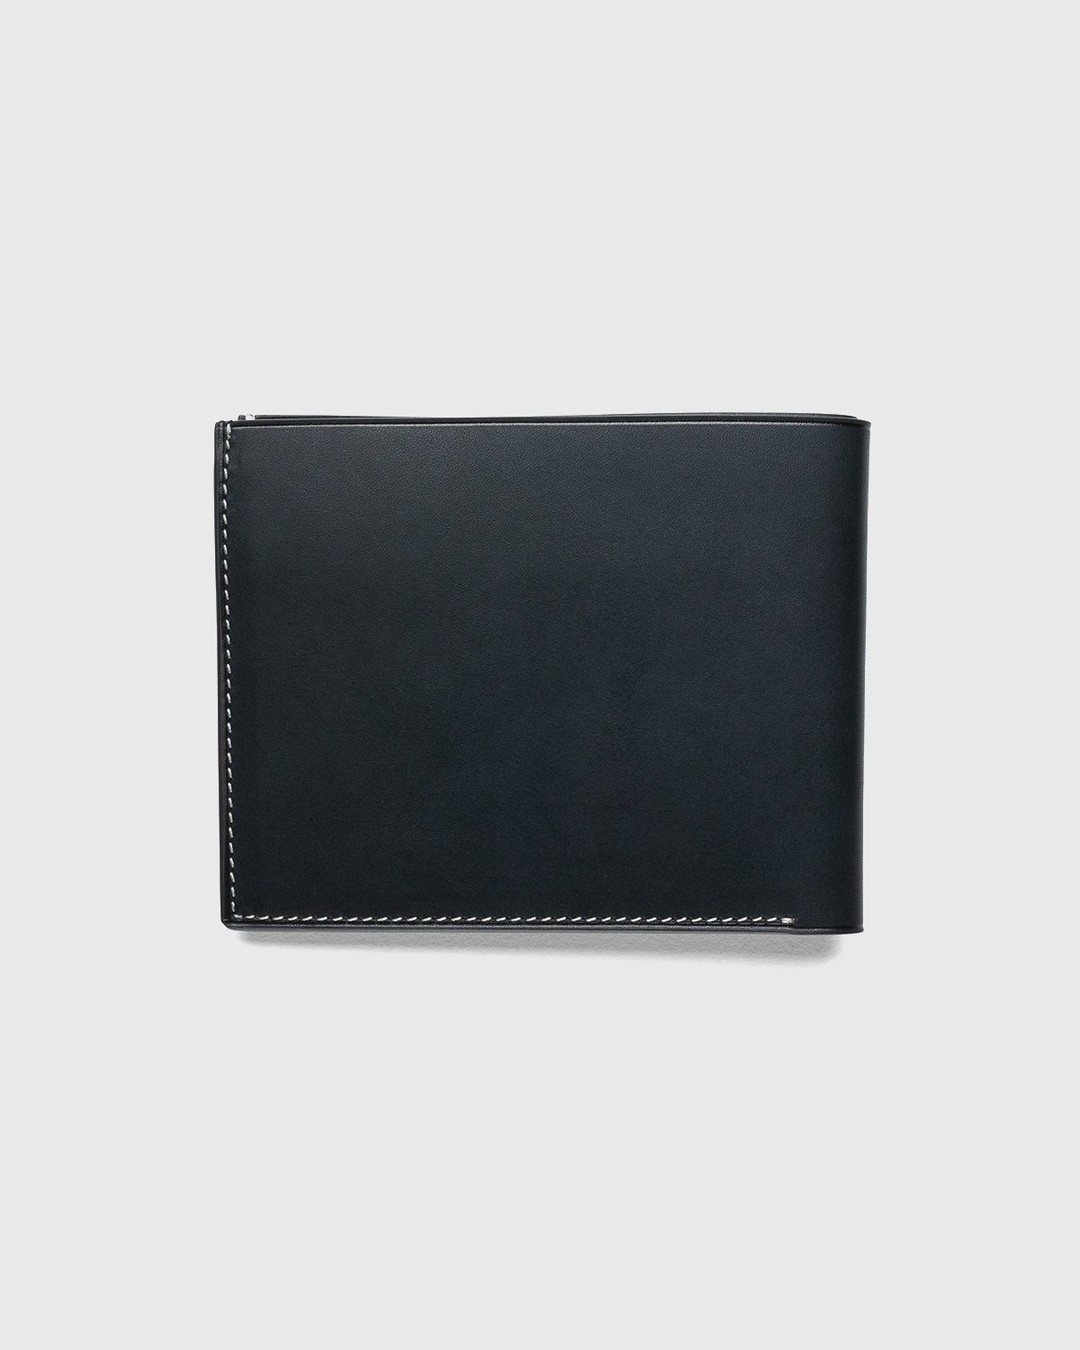 Jil Sander – Pocket Wallet Black - Wallets - Black - Image 2